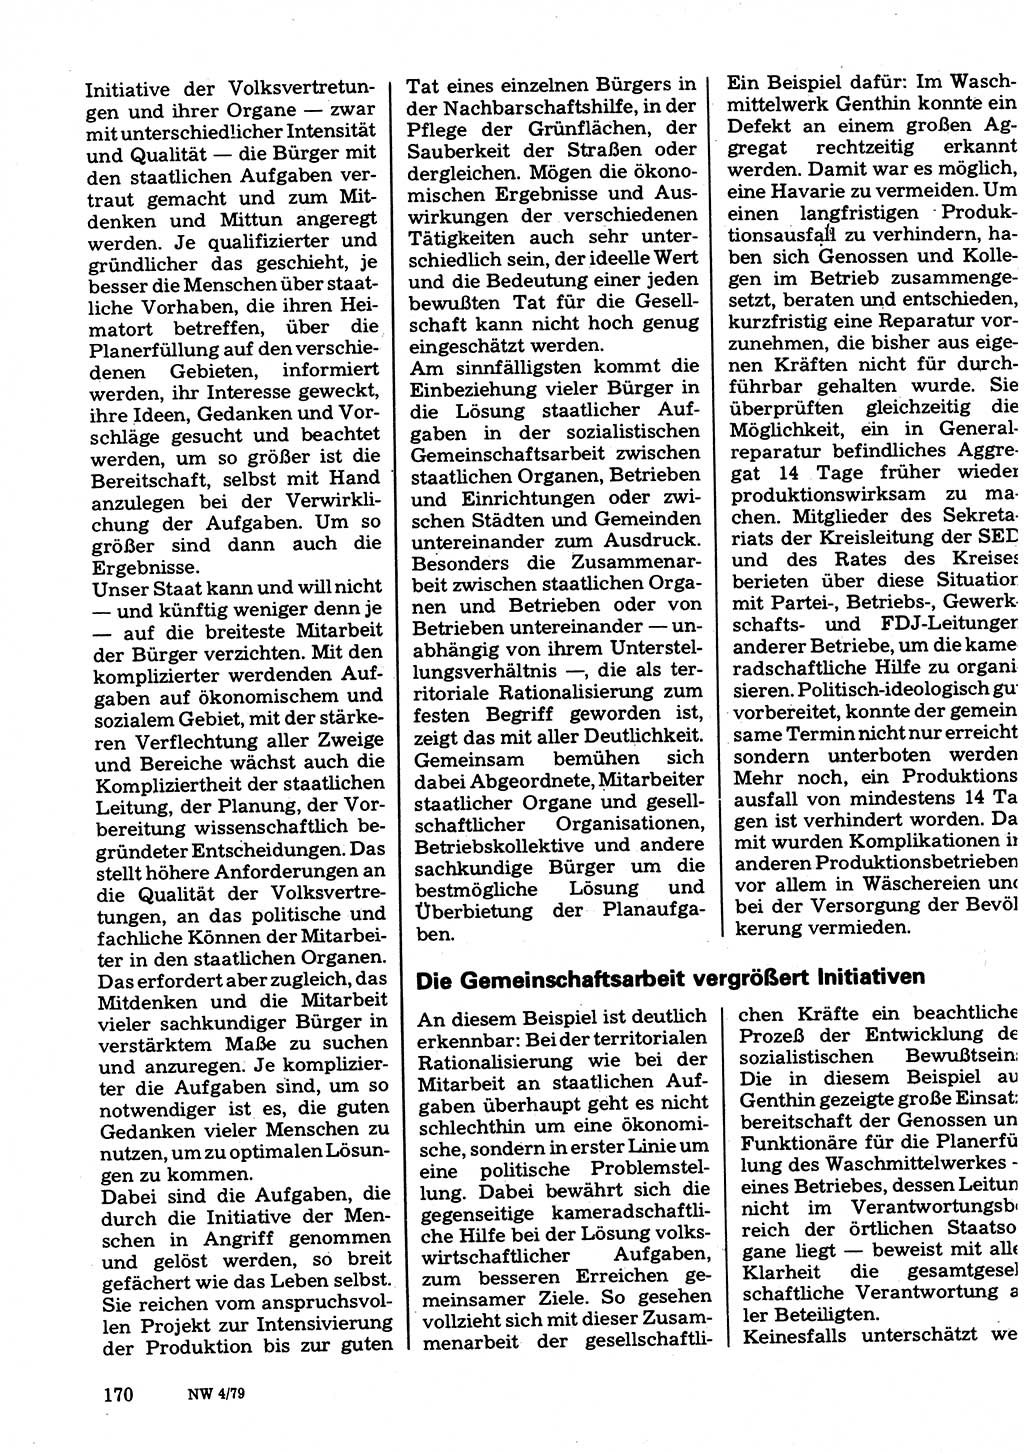 Neuer Weg (NW), Organ des Zentralkomitees (ZK) der SED (Sozialistische Einheitspartei Deutschlands) für Fragen des Parteilebens, 34. Jahrgang [Deutsche Demokratische Republik (DDR)] 1979, Seite 170 (NW ZK SED DDR 1979, S. 170)